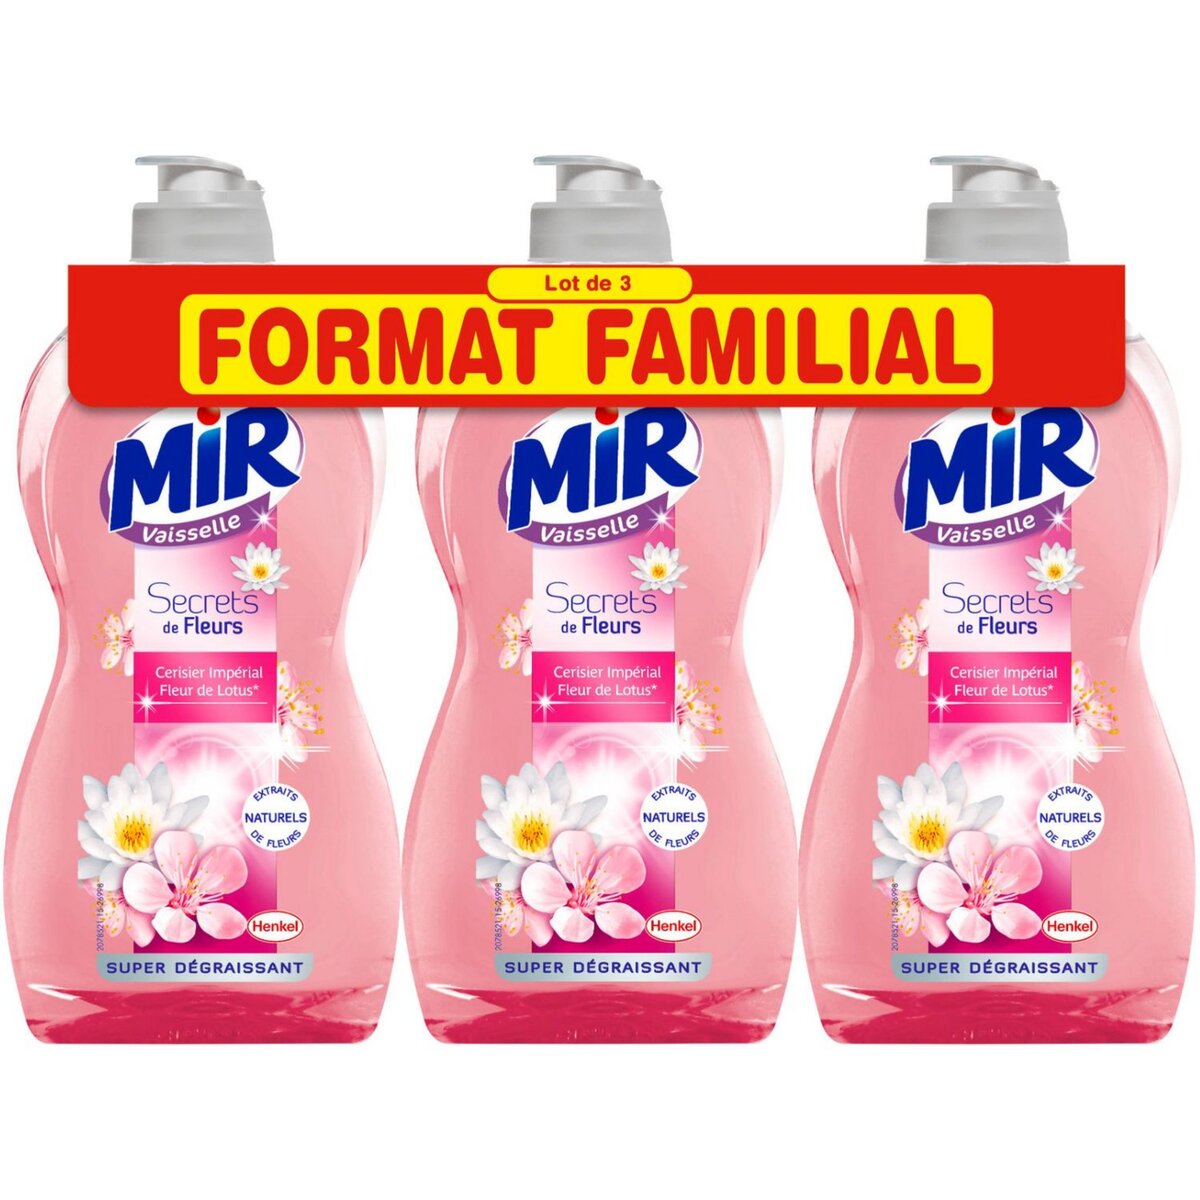 MIR Mir liquide vaisselle secret cerisier 3x500ml lot familial pas cher 